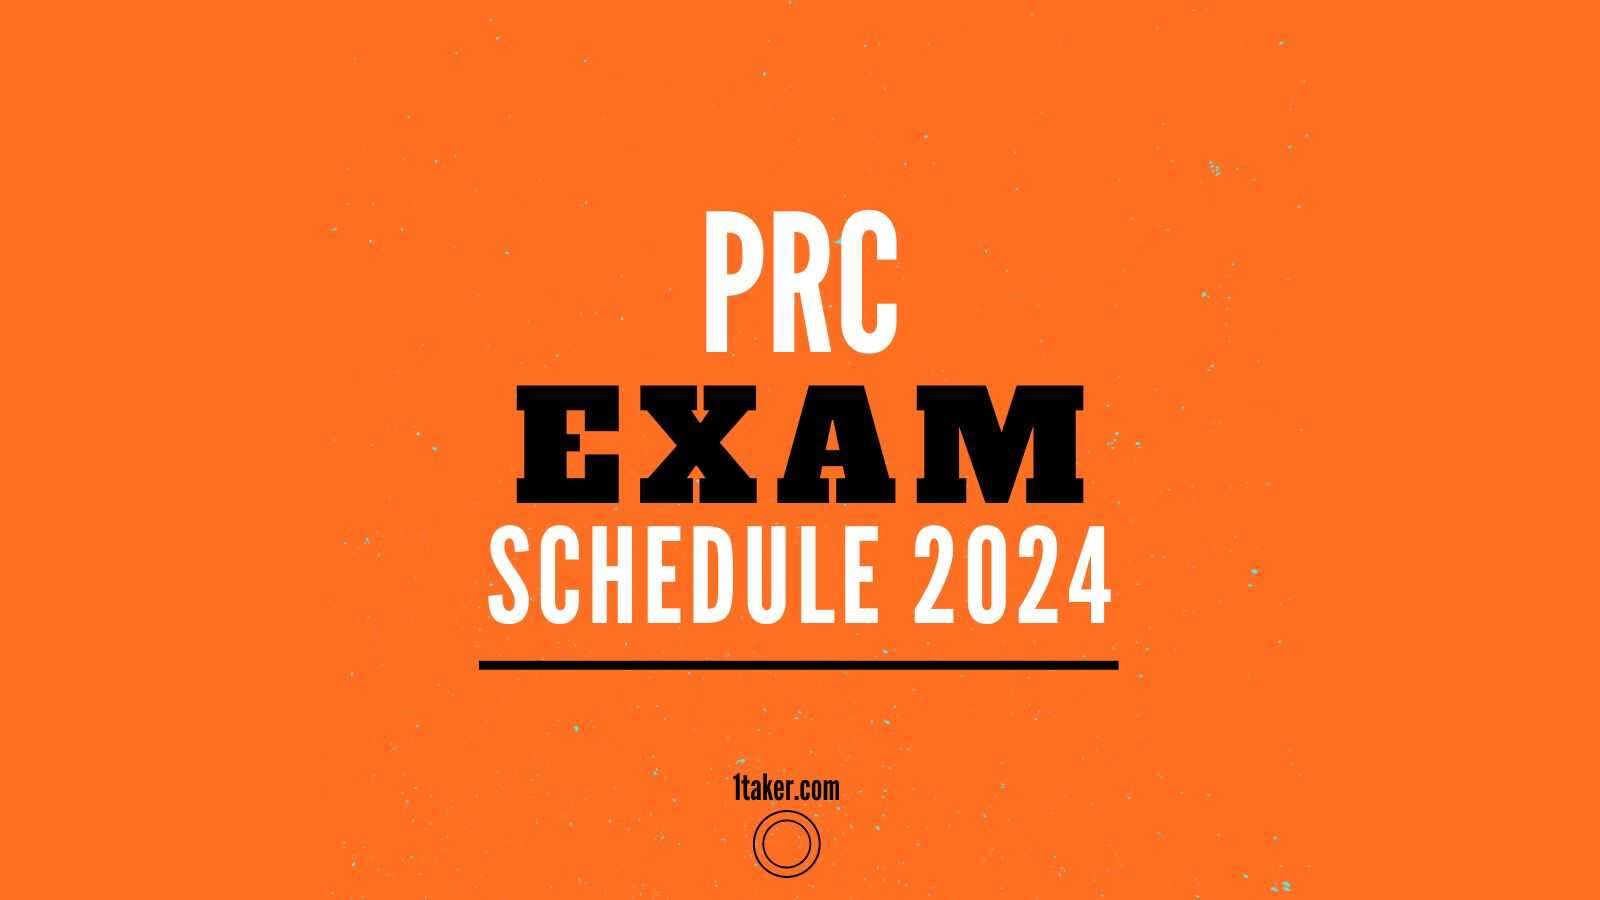 PRC exam schedule in 2024